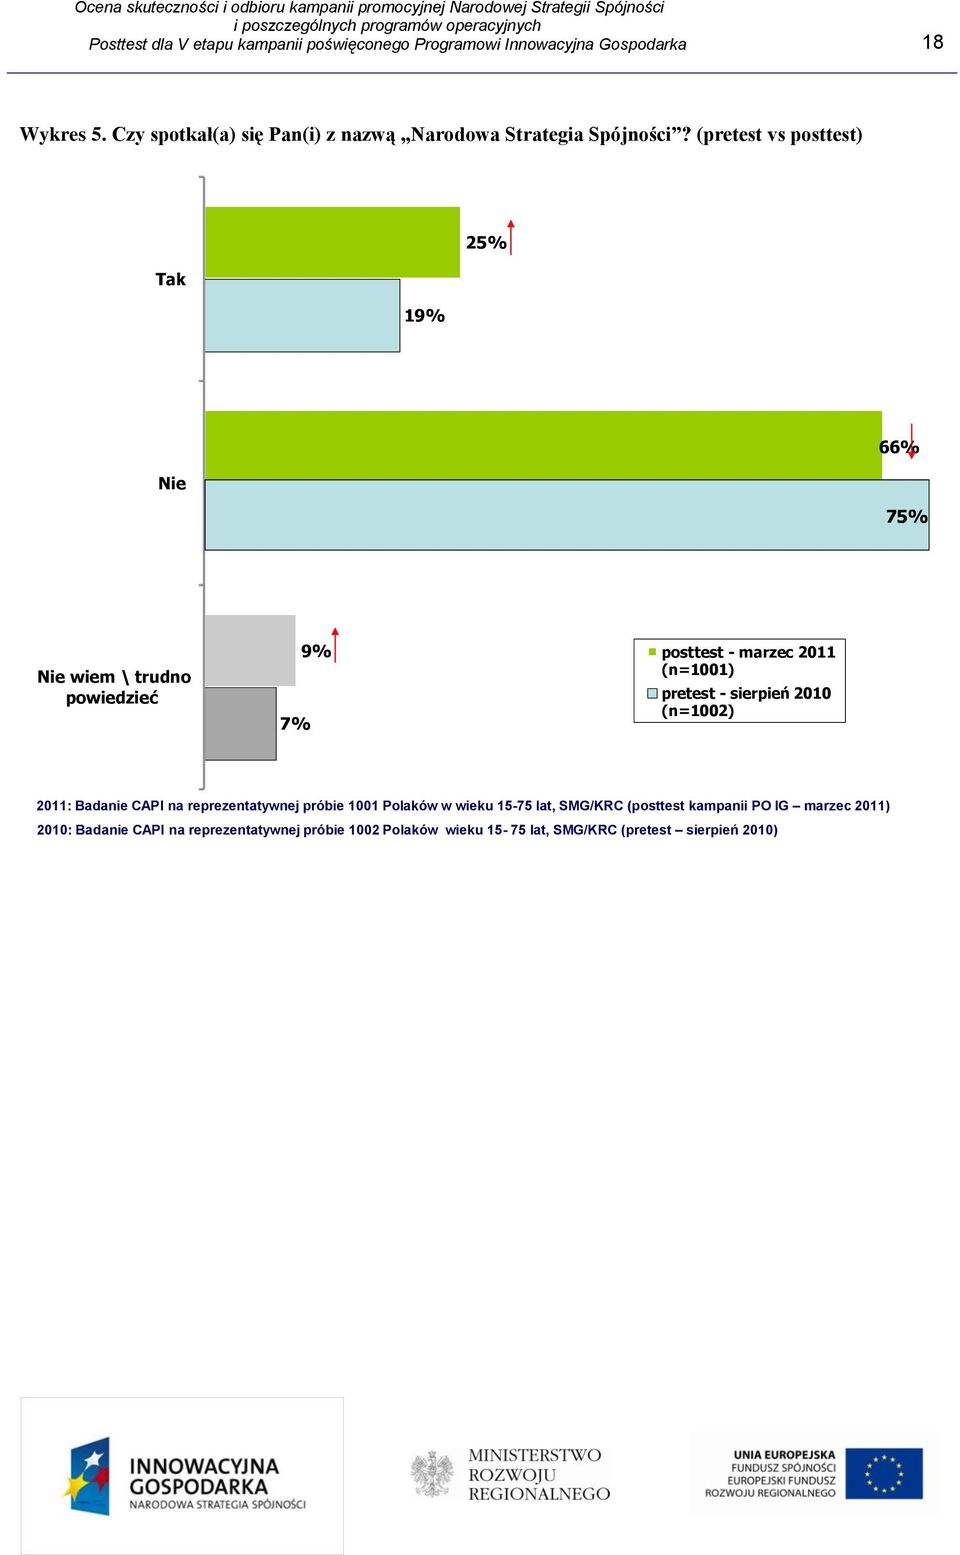 (pretest vs posttest) Tak 19% 25% Nie 66% 75% Nie wiem \ trudno powiedzieć 7% 9% posttest - marzec 2011 (n=1001) pretest - sierpień